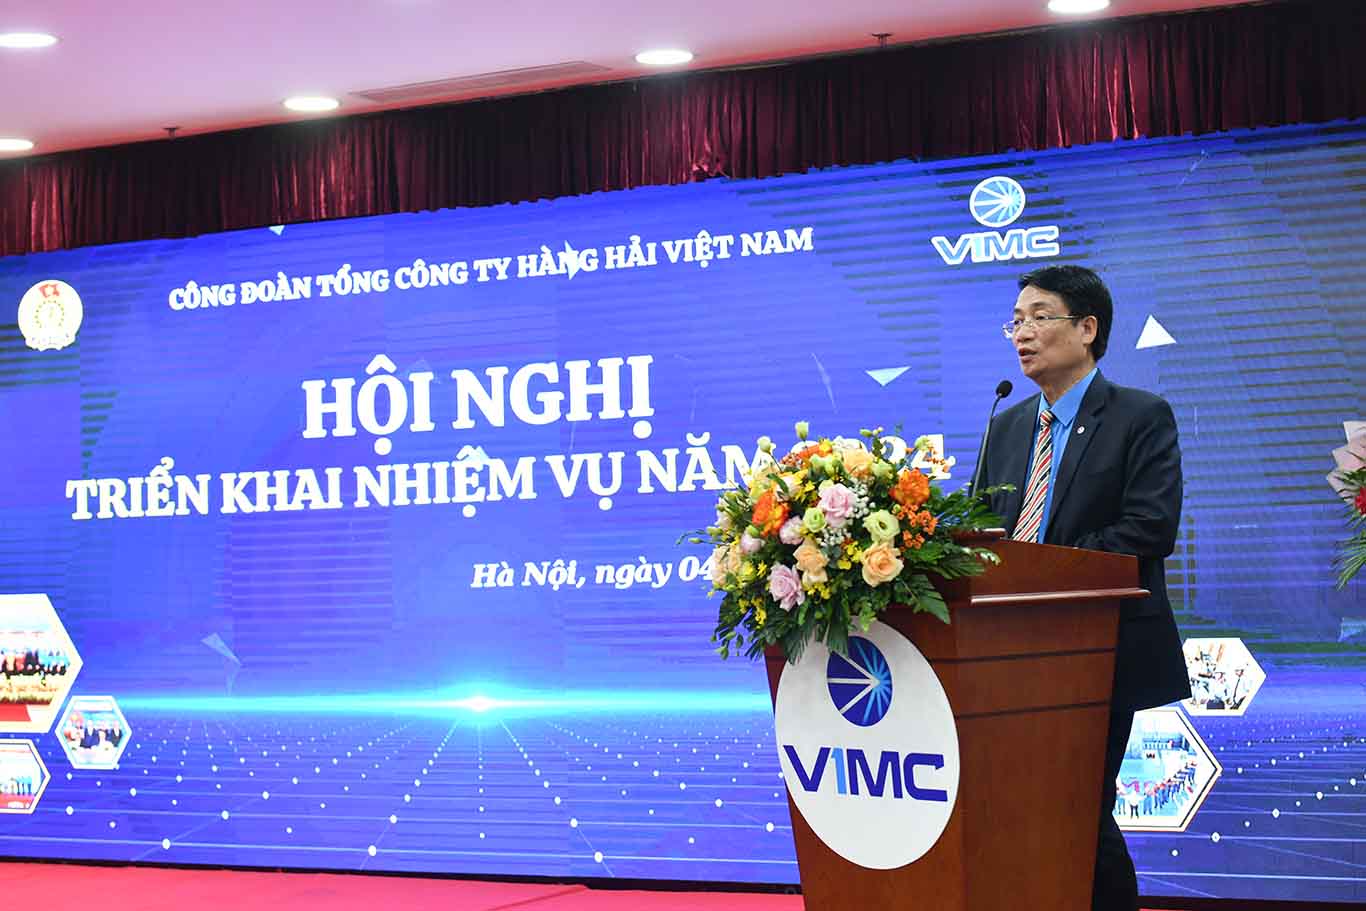 Ông Lê Phan Linh - Chủ tịch Công đoàn Tổng Công ty Hàng hải Việt Nam phát biểu tại hội nghị. Ảnh: Thế Đại